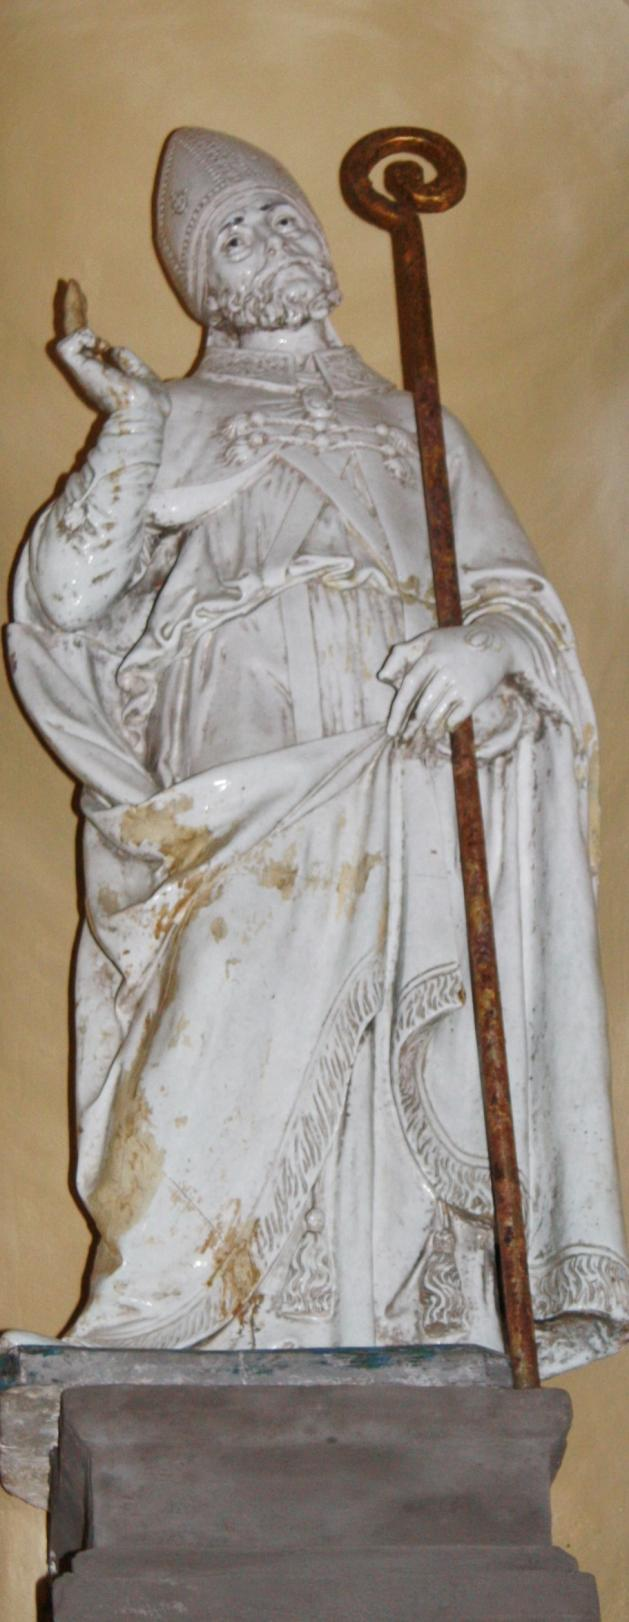 Presbiterio: Luca (Firenze, 1400-1481) e Andrea (Firenze, 1435-1525) Della Robbia, San Biagio Vescovo, terracotta